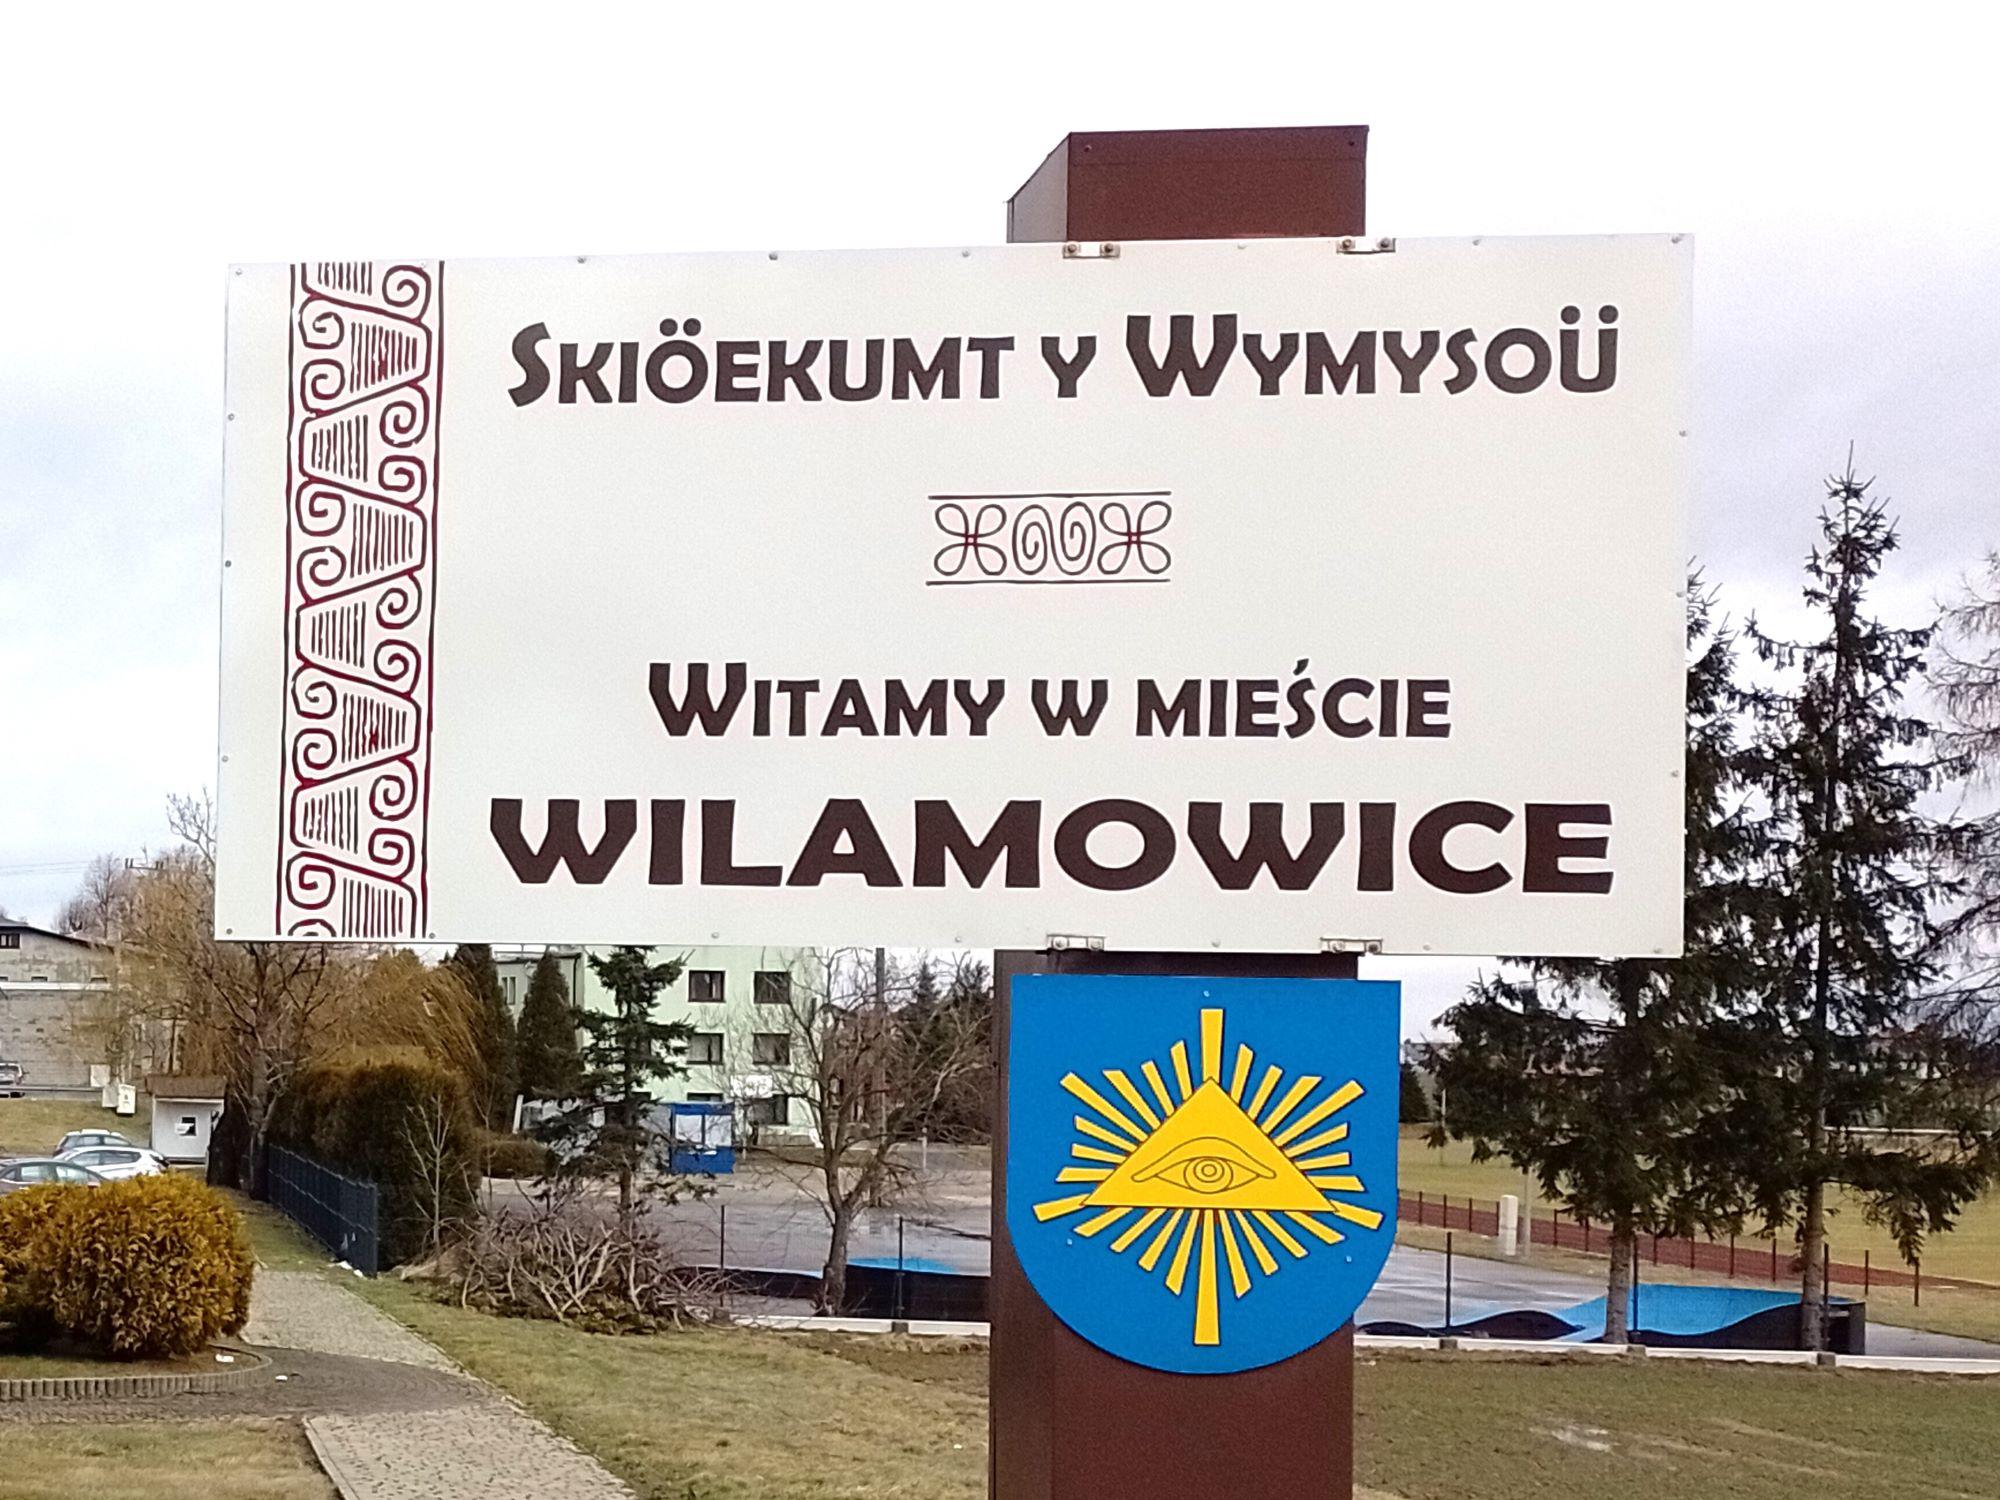 Skiöekumt in Wymysoü - Witamy w mieście Wilamowice